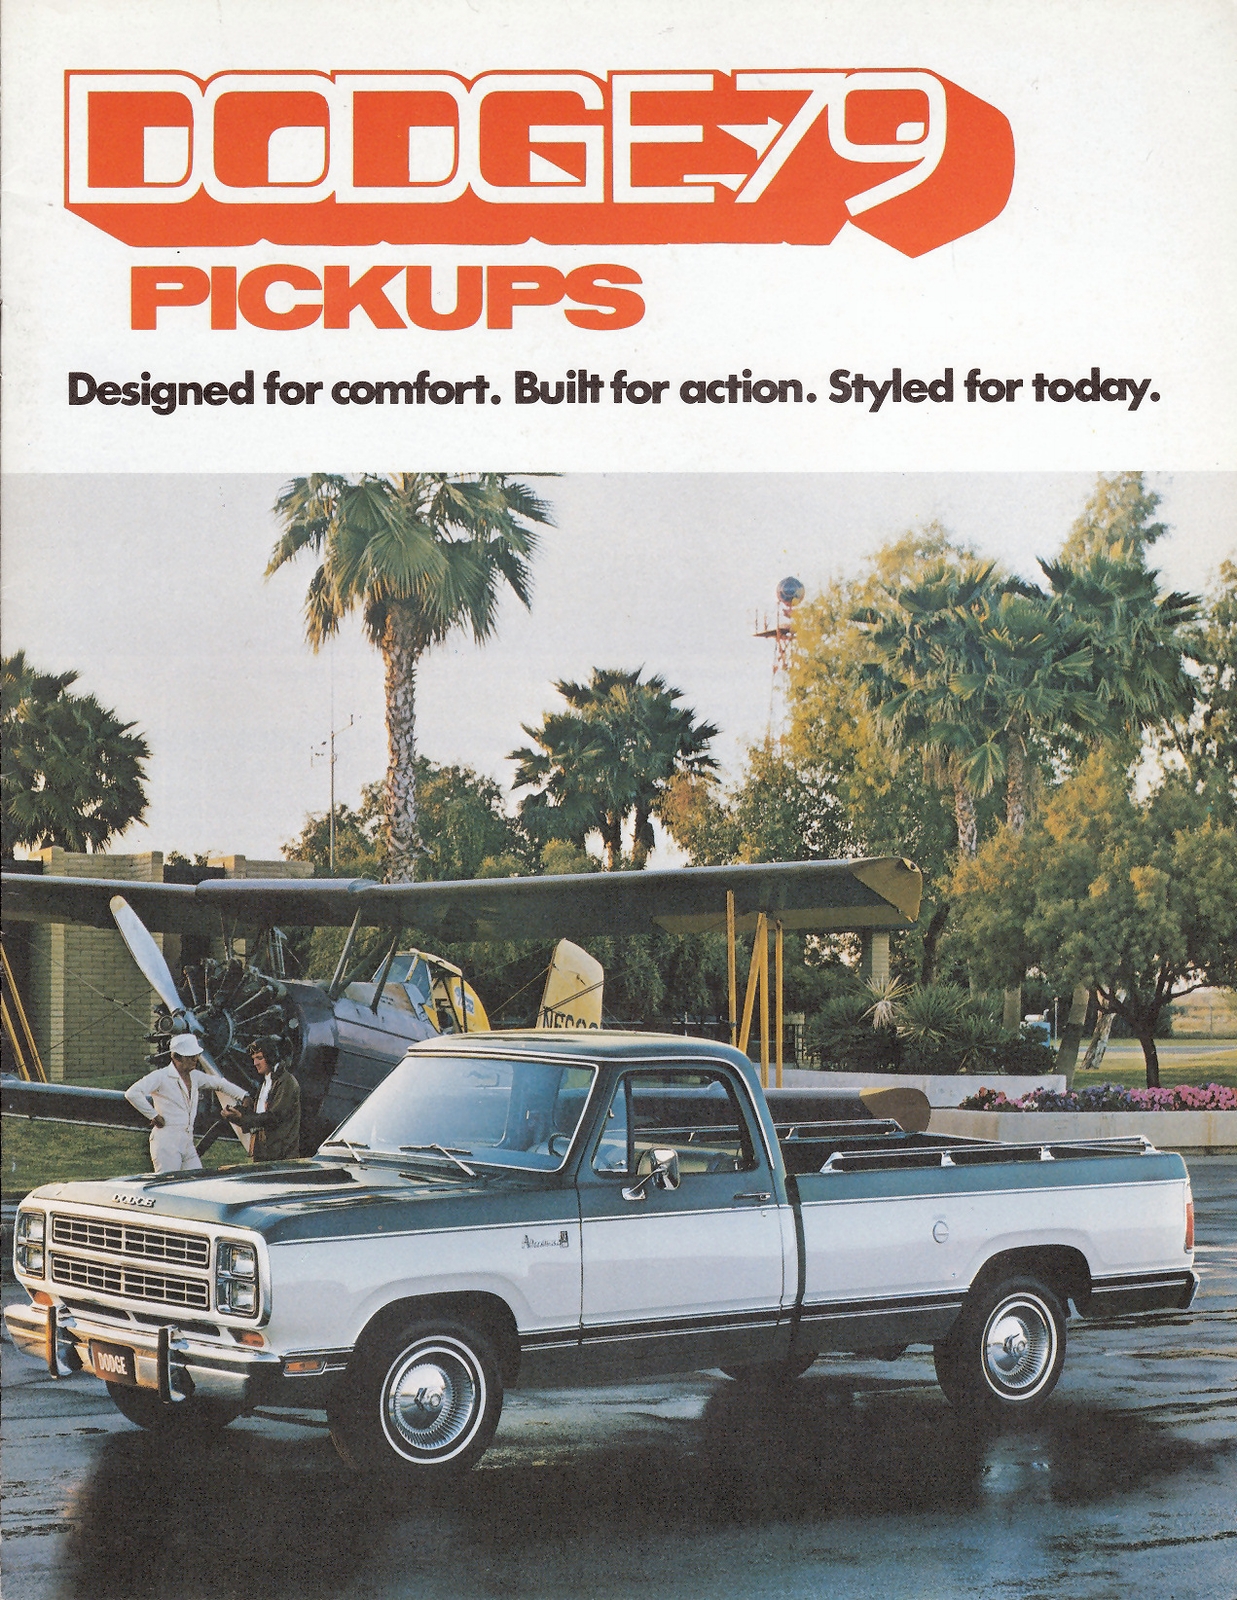 n_1979 Dodge Pickups (Cdn)-01.jpg